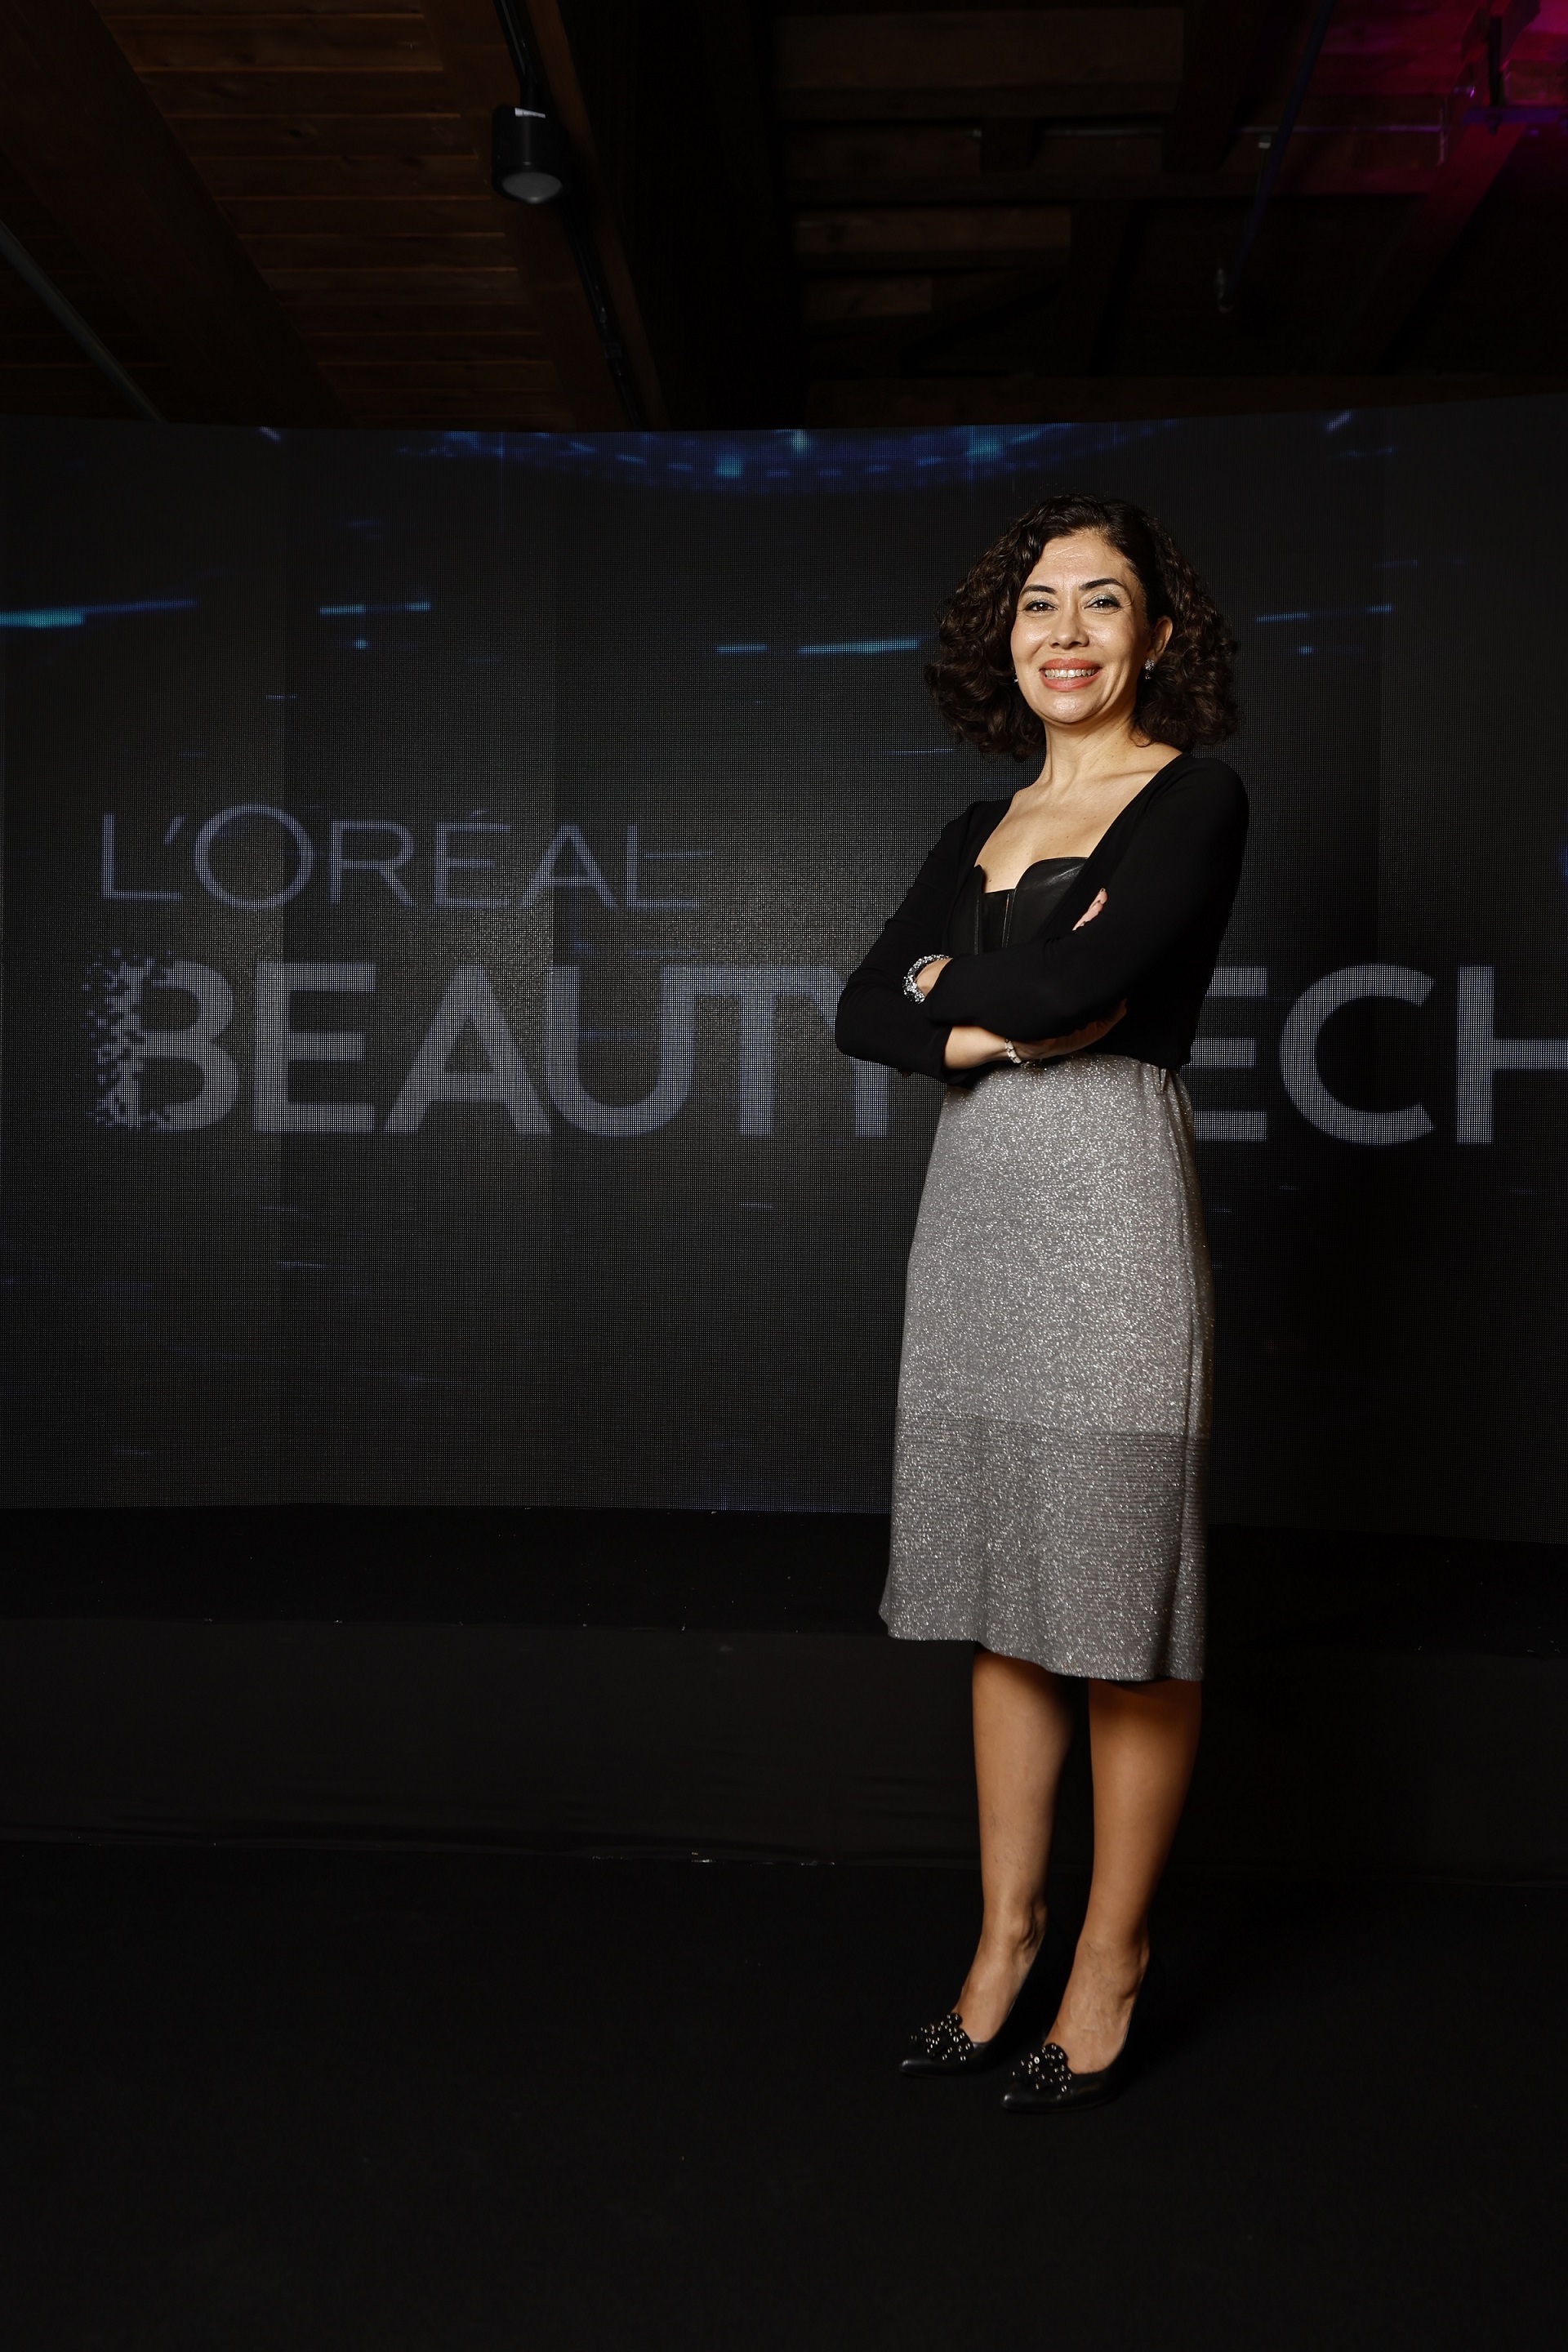 L’Oreal Türkiye geleceğin güzelliğini tekno-güzellik uygulamaları ile bugünden tasarlıyor